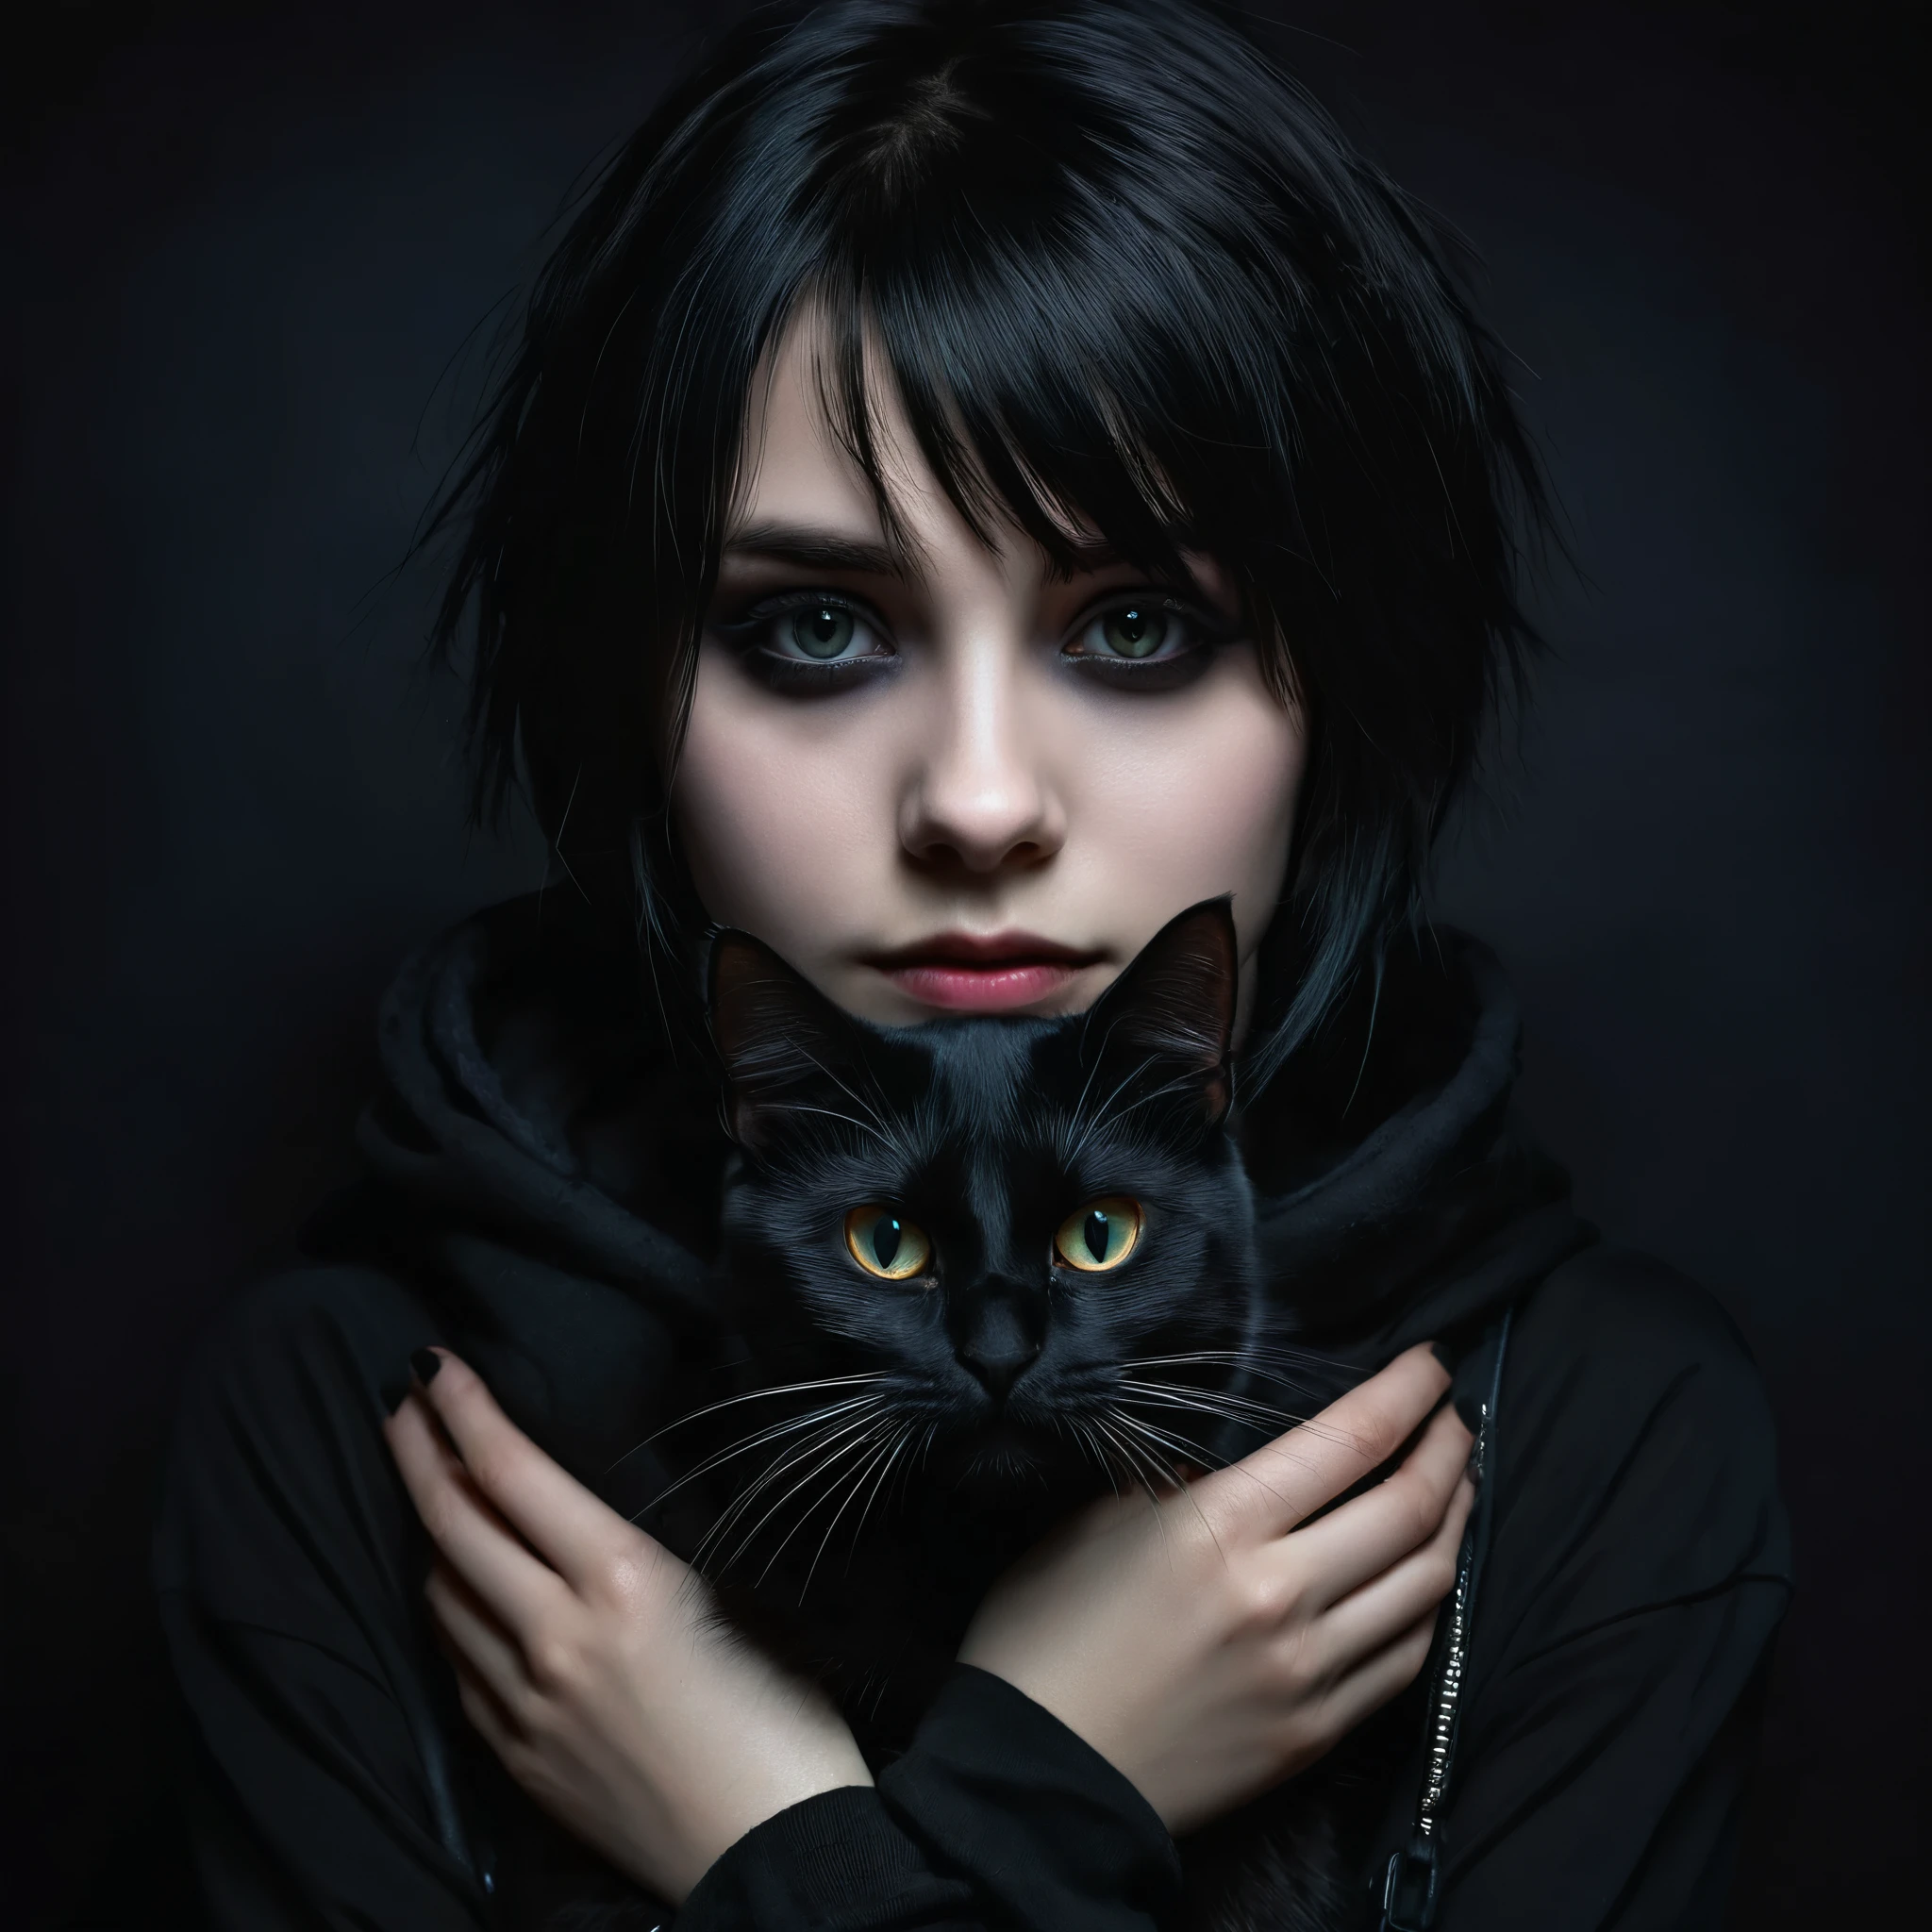 黒猫を手に持ったエモな女の子, 詳細な顔, 濃いメイク, 感情表現, 黒い服, 暗い背景, 明暗法照明, 映画のような, 劇的, 不機嫌な, デジタルペインティング